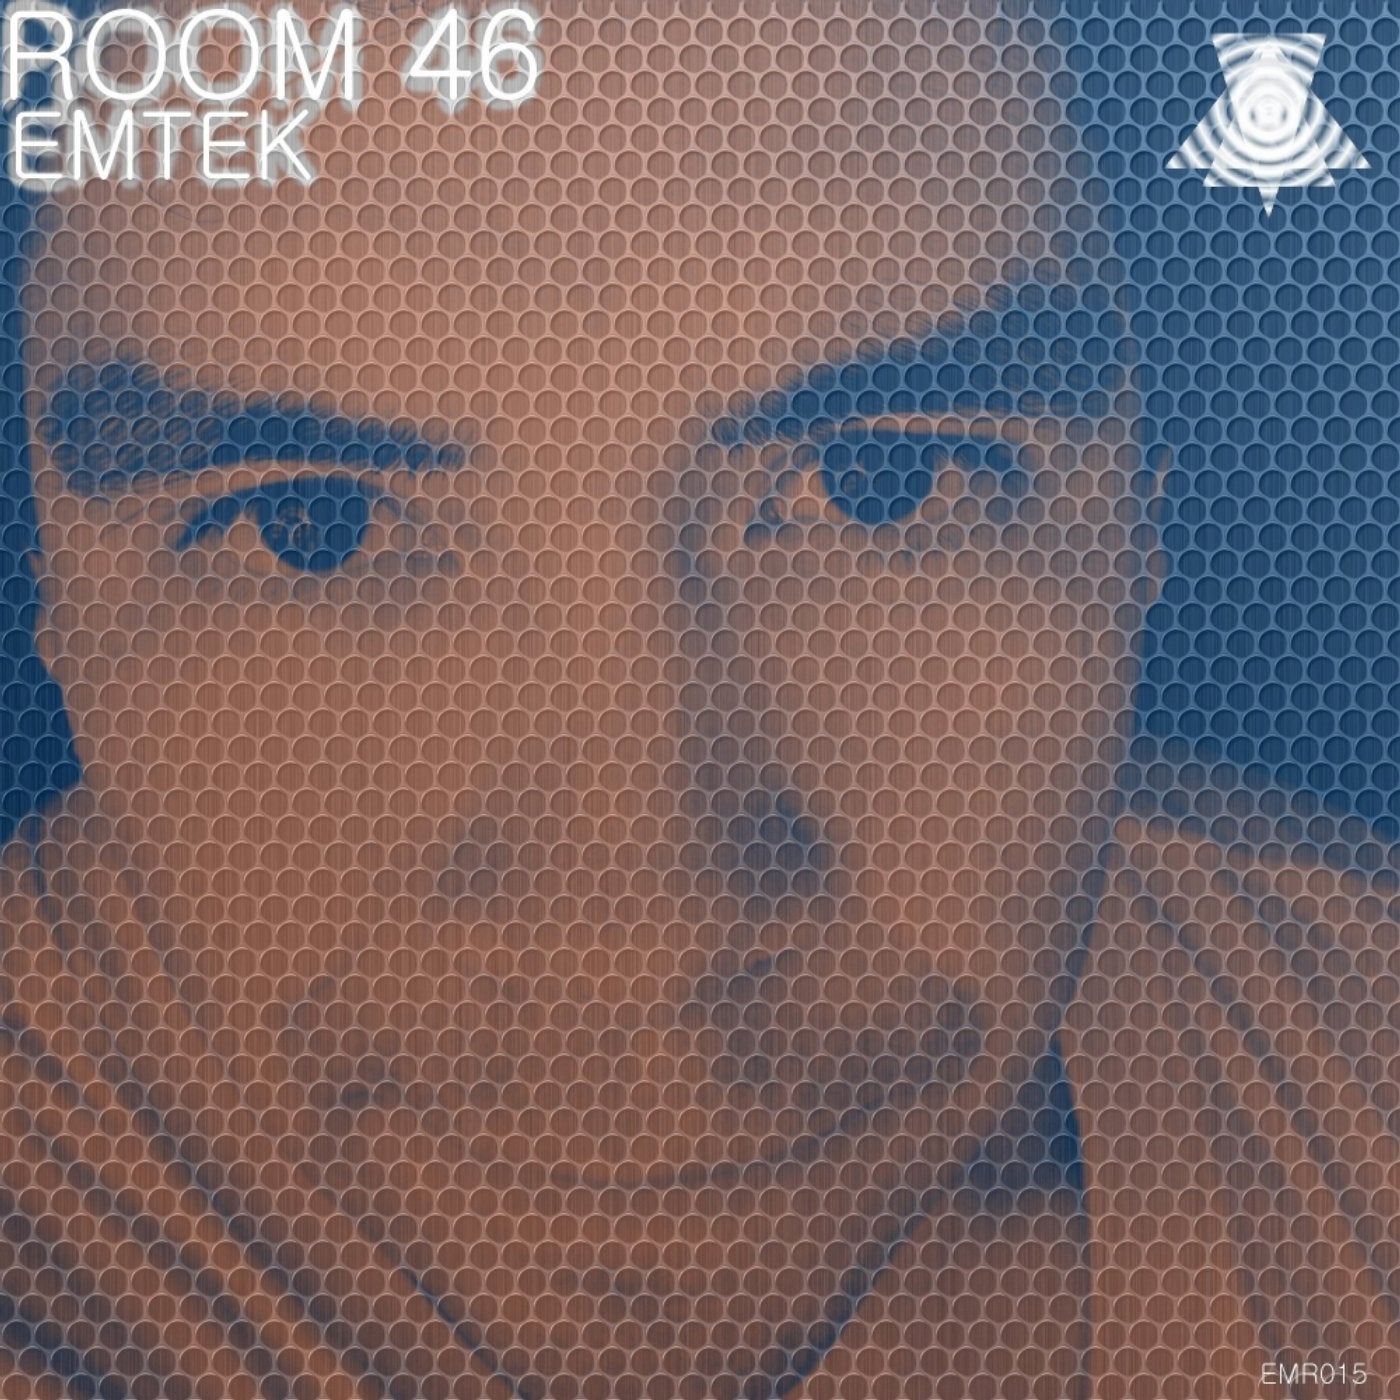 Room 46